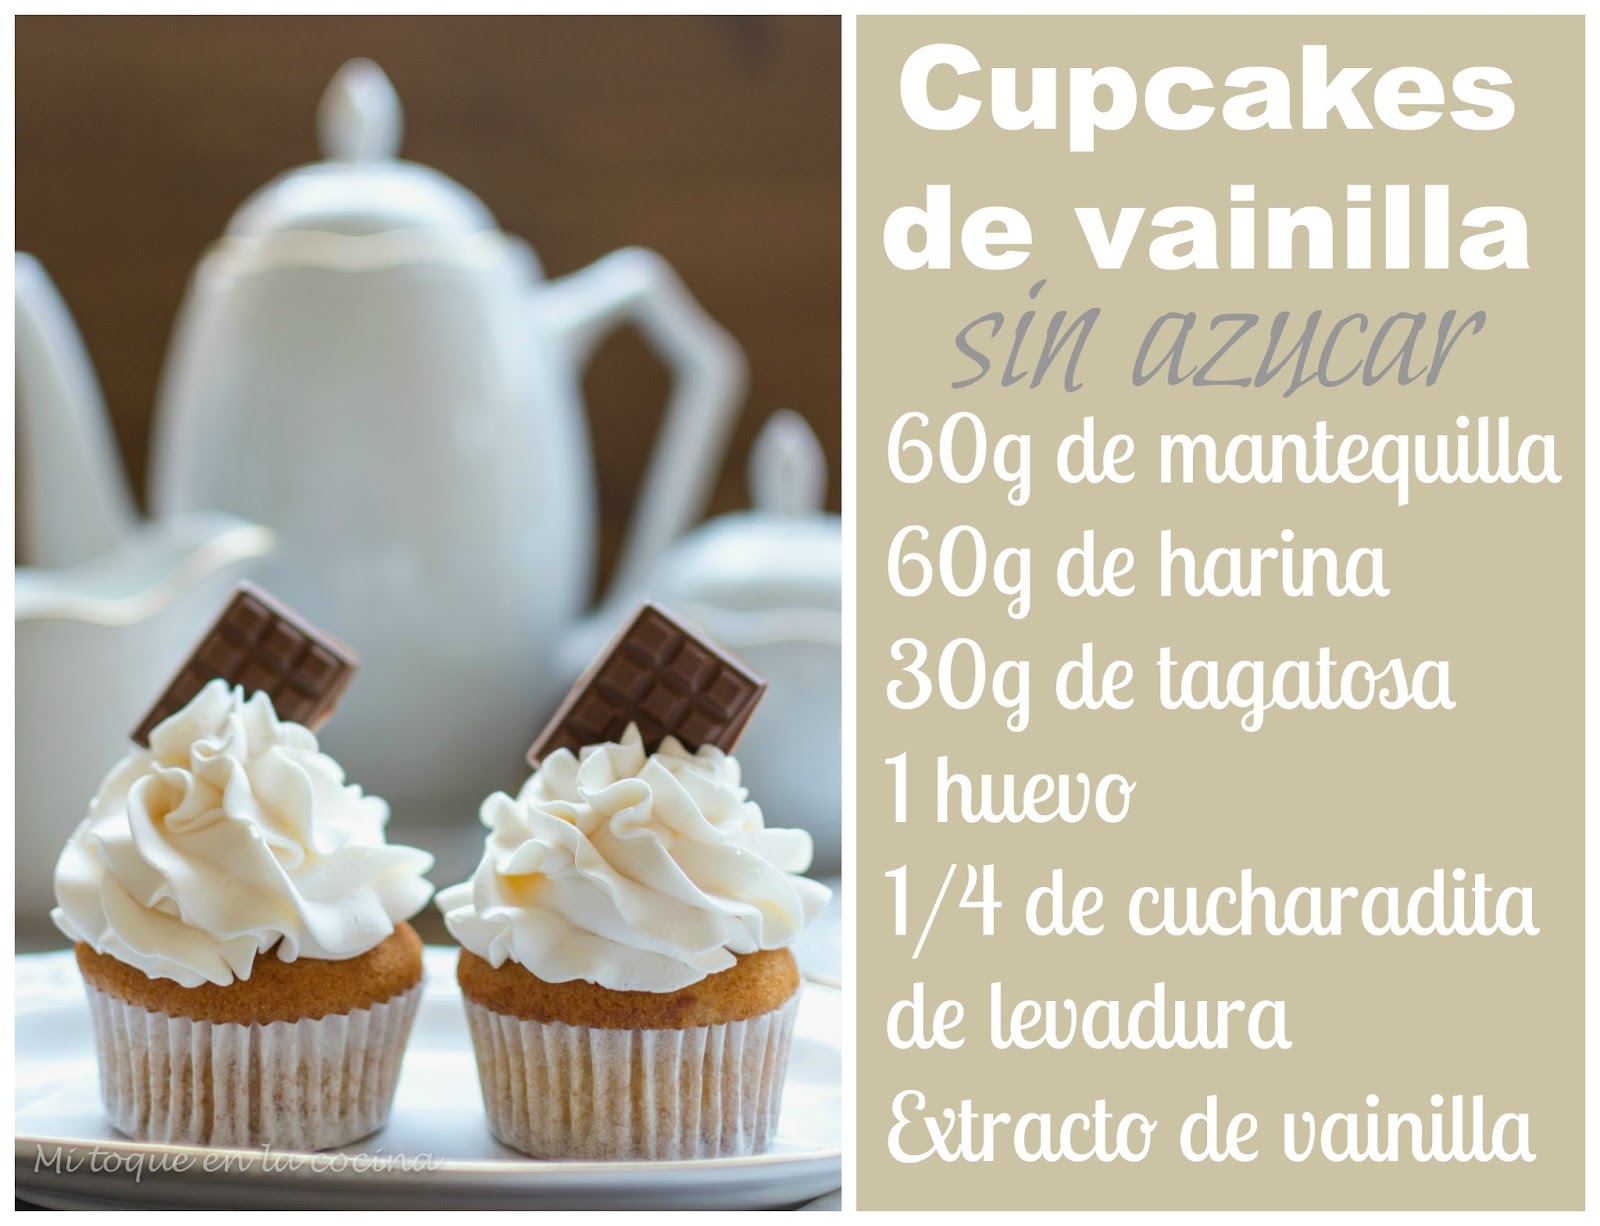 Mi toque en la cocina: Cupcakes de vainilla sin azúcar